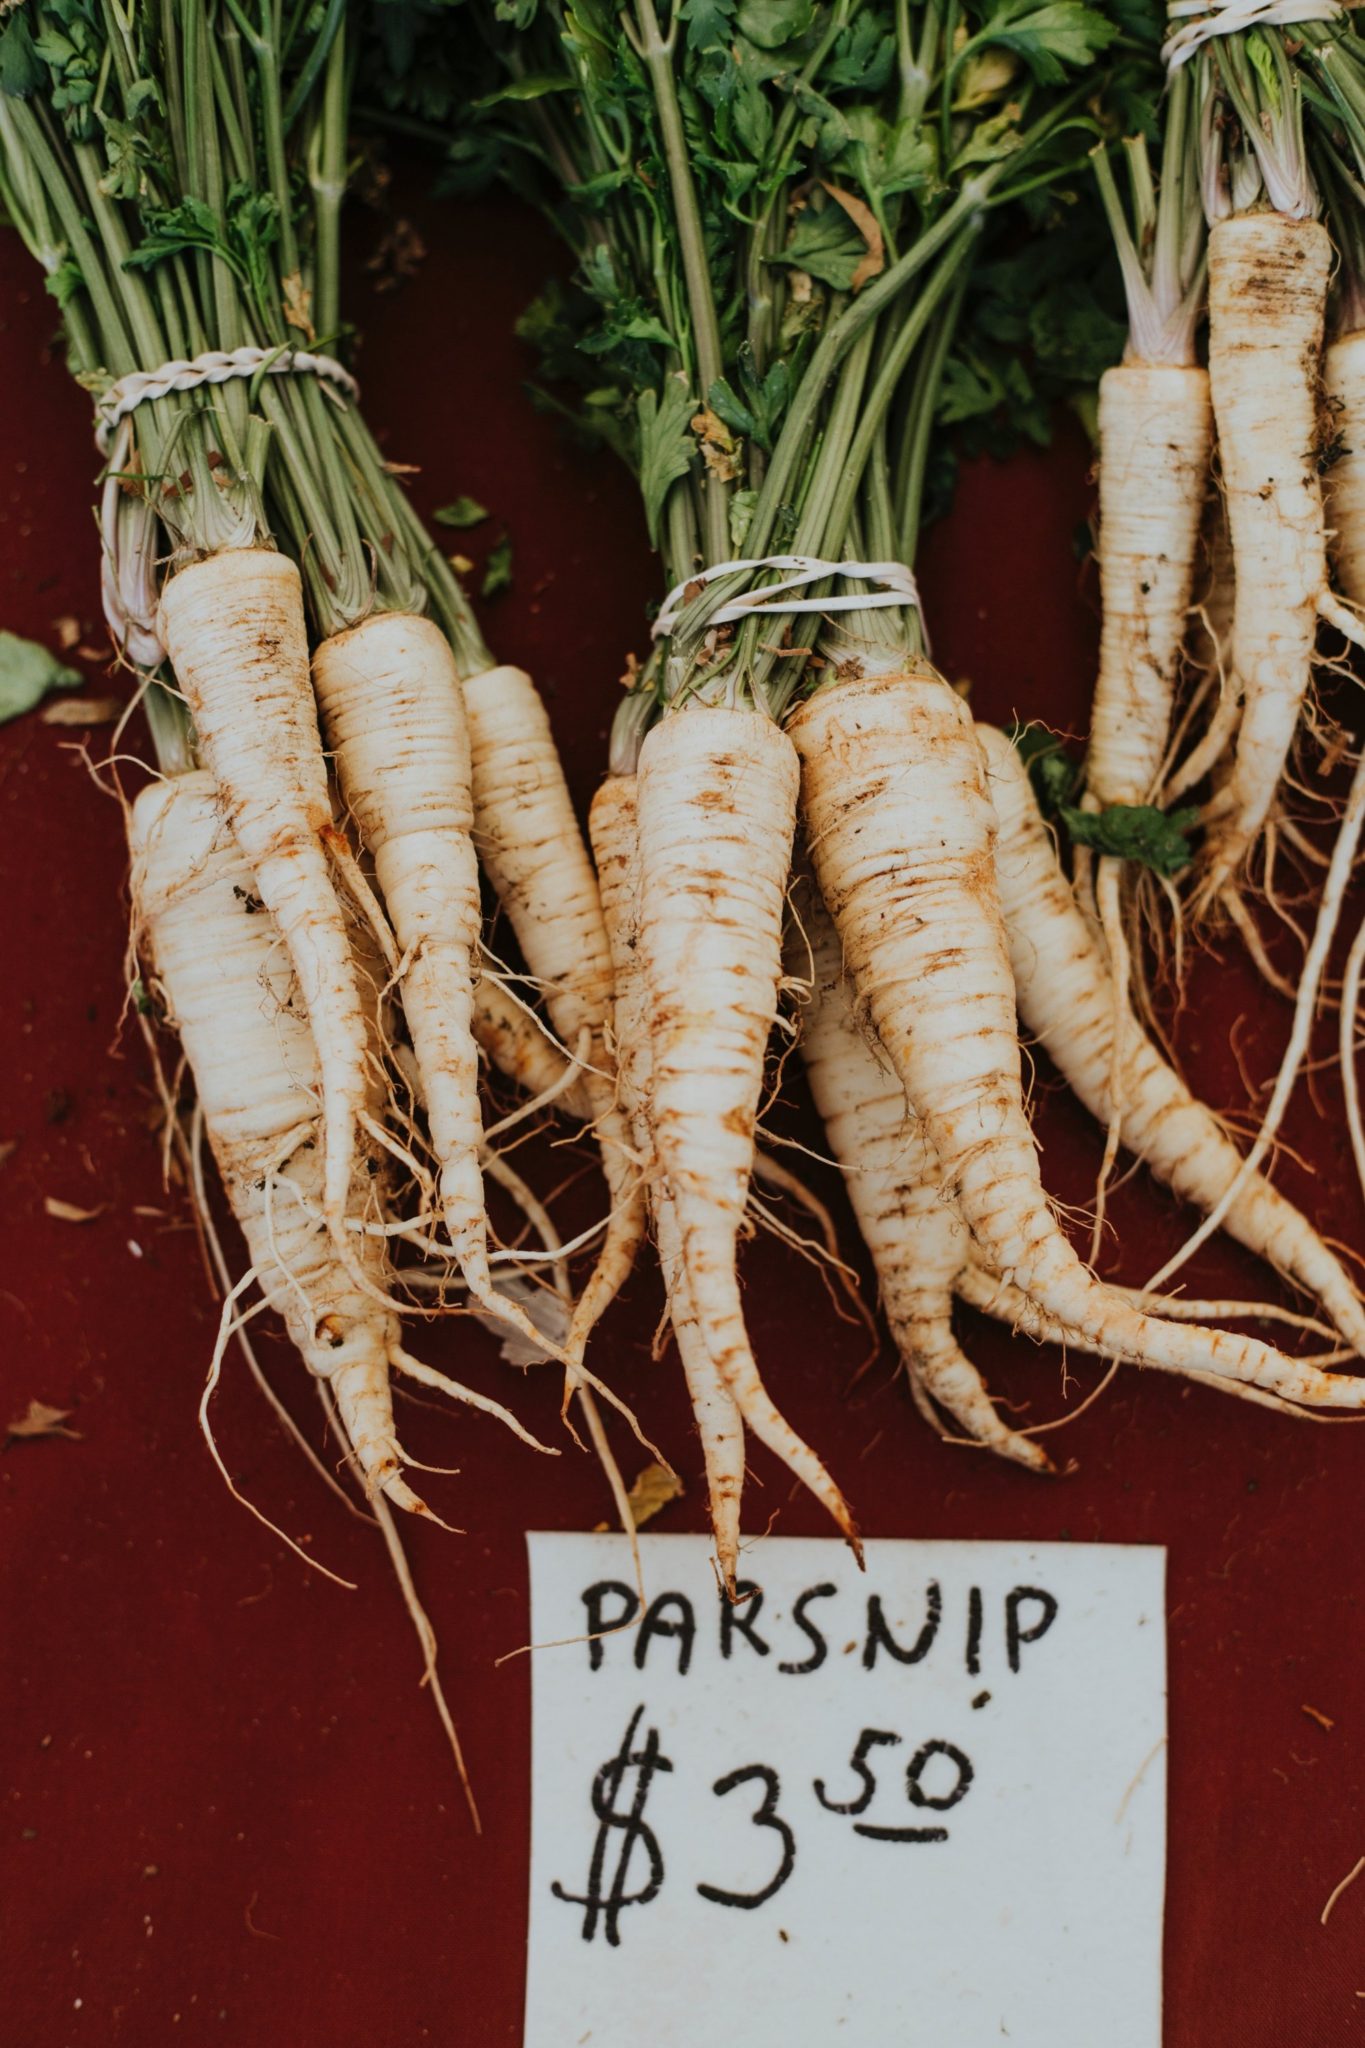 Eat magnesium rich parsnips